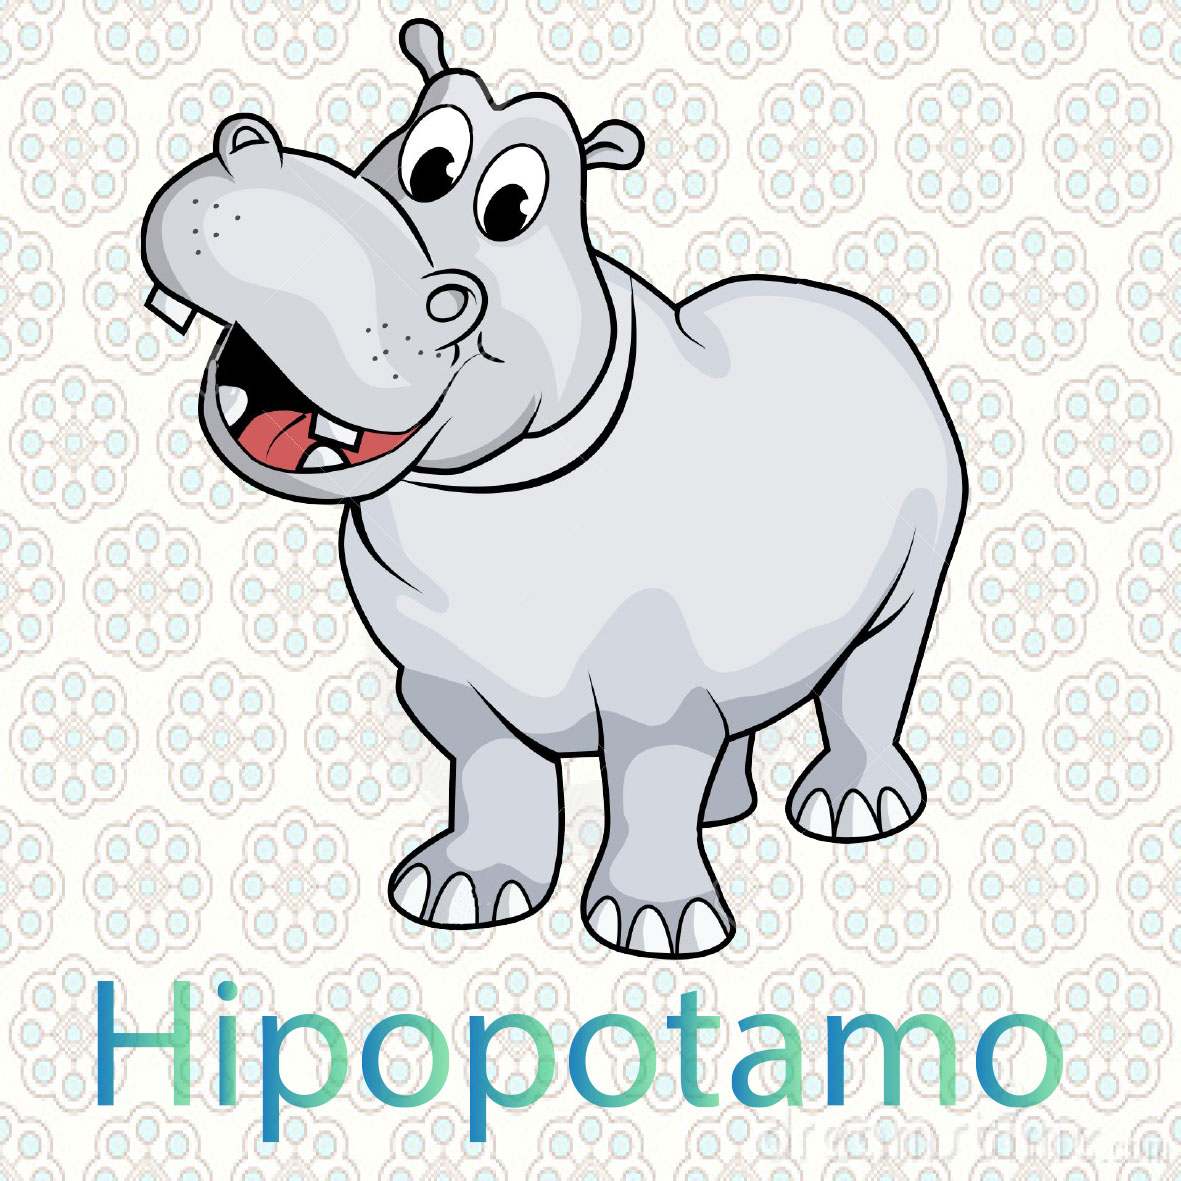  imagen de un hipopotamo, viven en Asia, son animales muy grandes, los hipopotamos comen hiervas. 